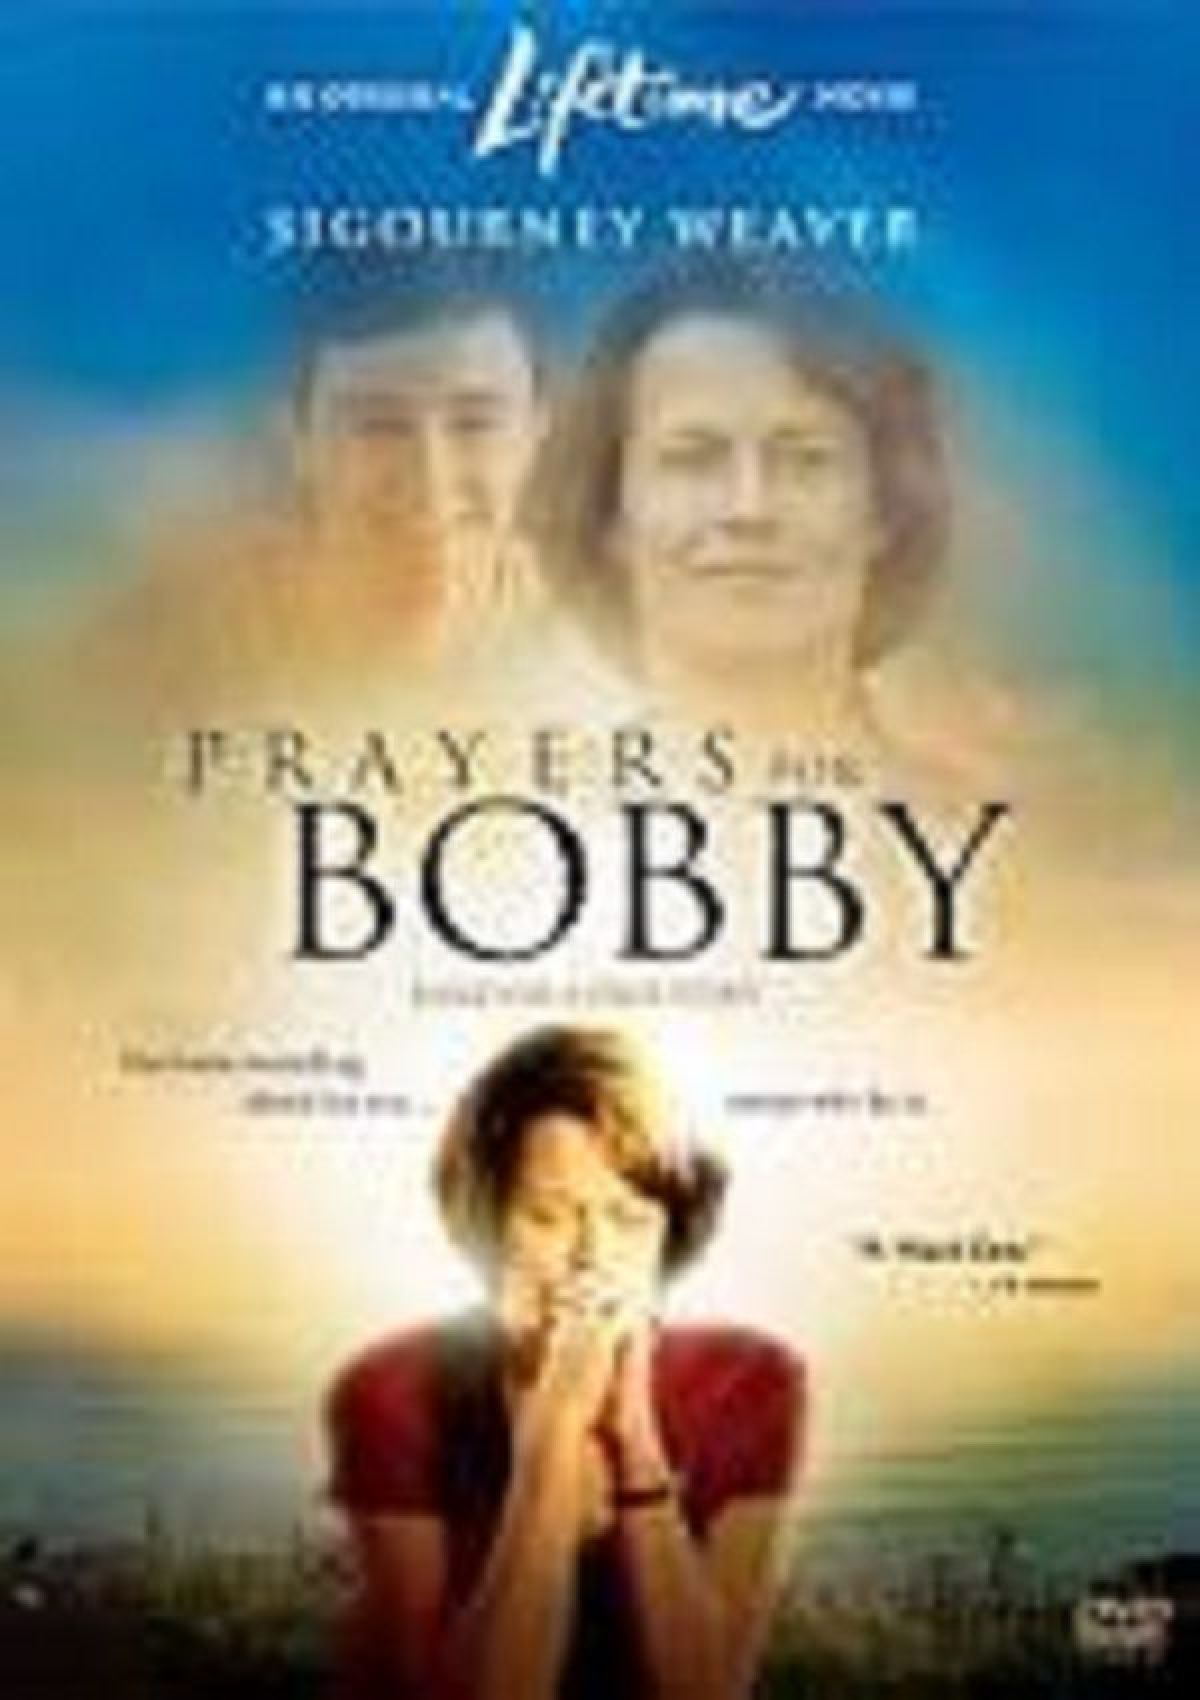 Prayers for Bobby